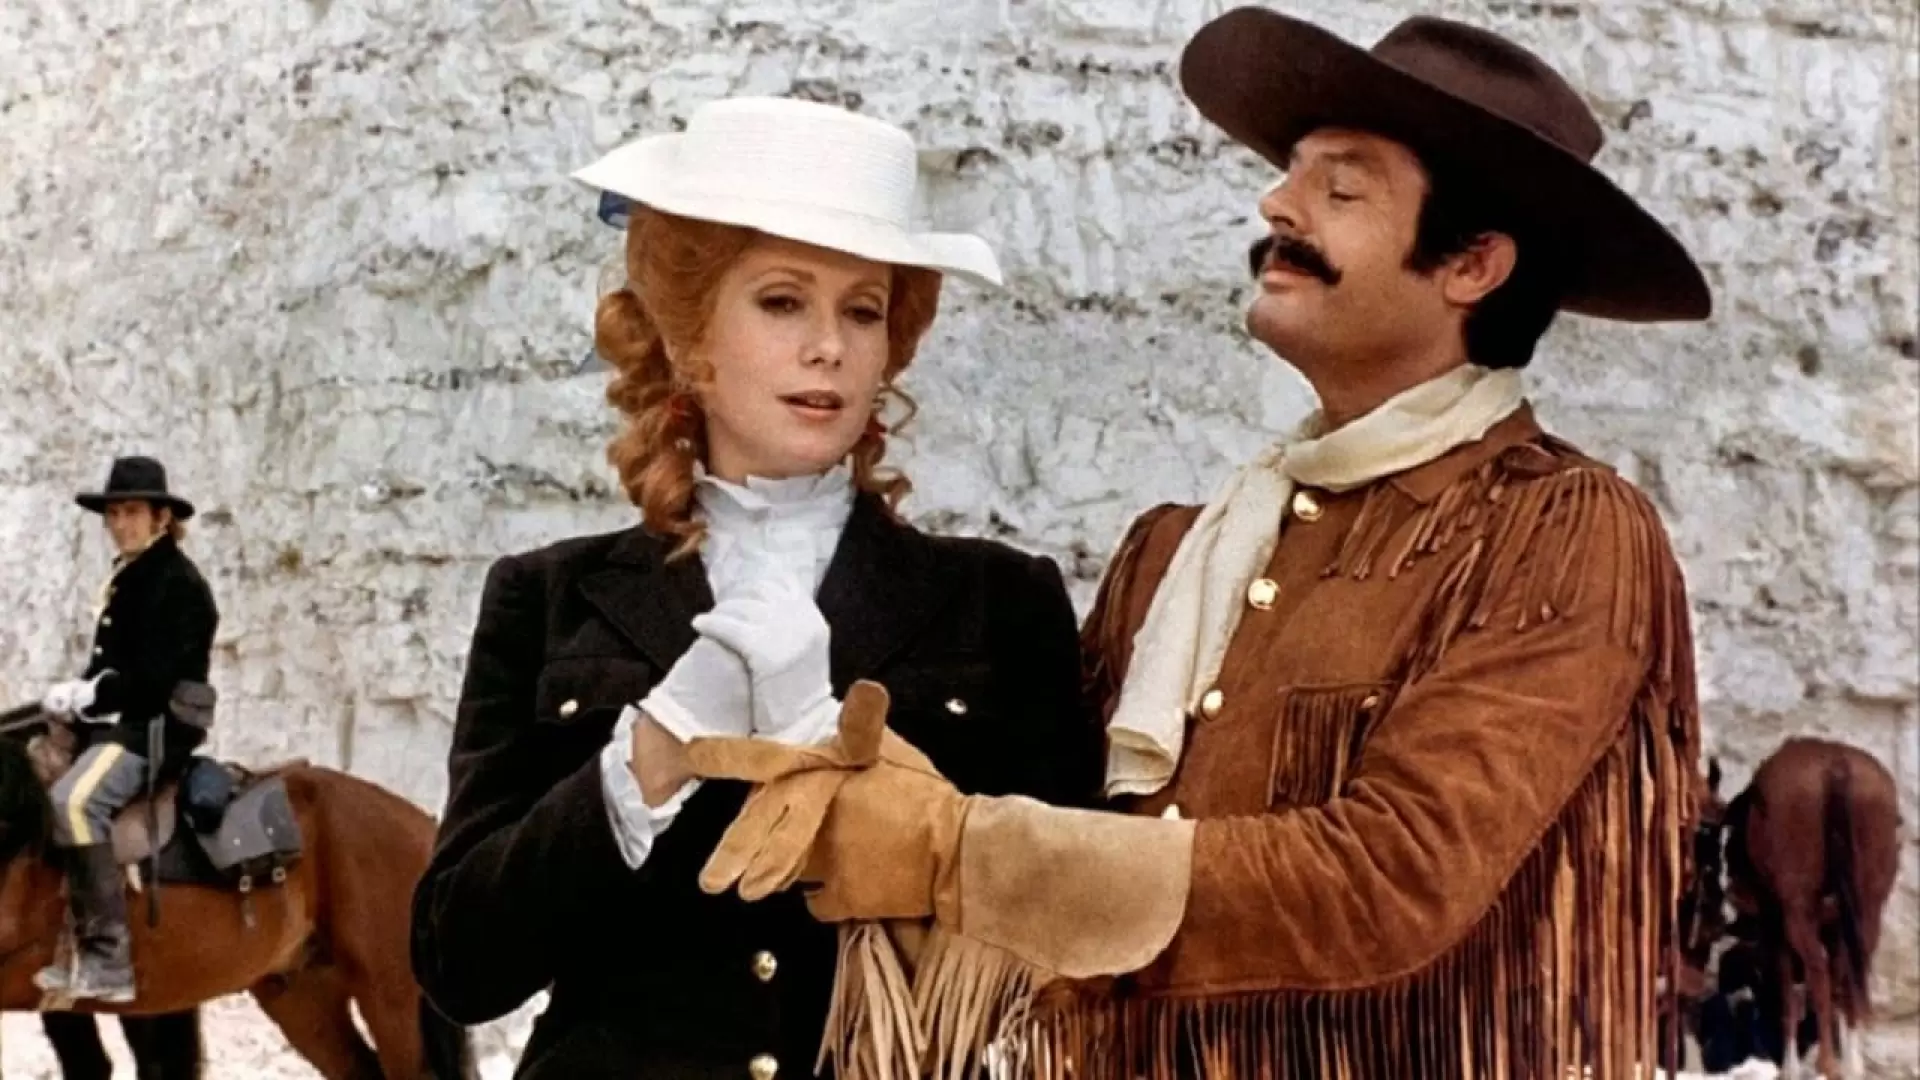 دانلود فیلم Don’t Touch the White Woman! 1974 (به زن سفید دست نزن !) با زیرنویس فارسی